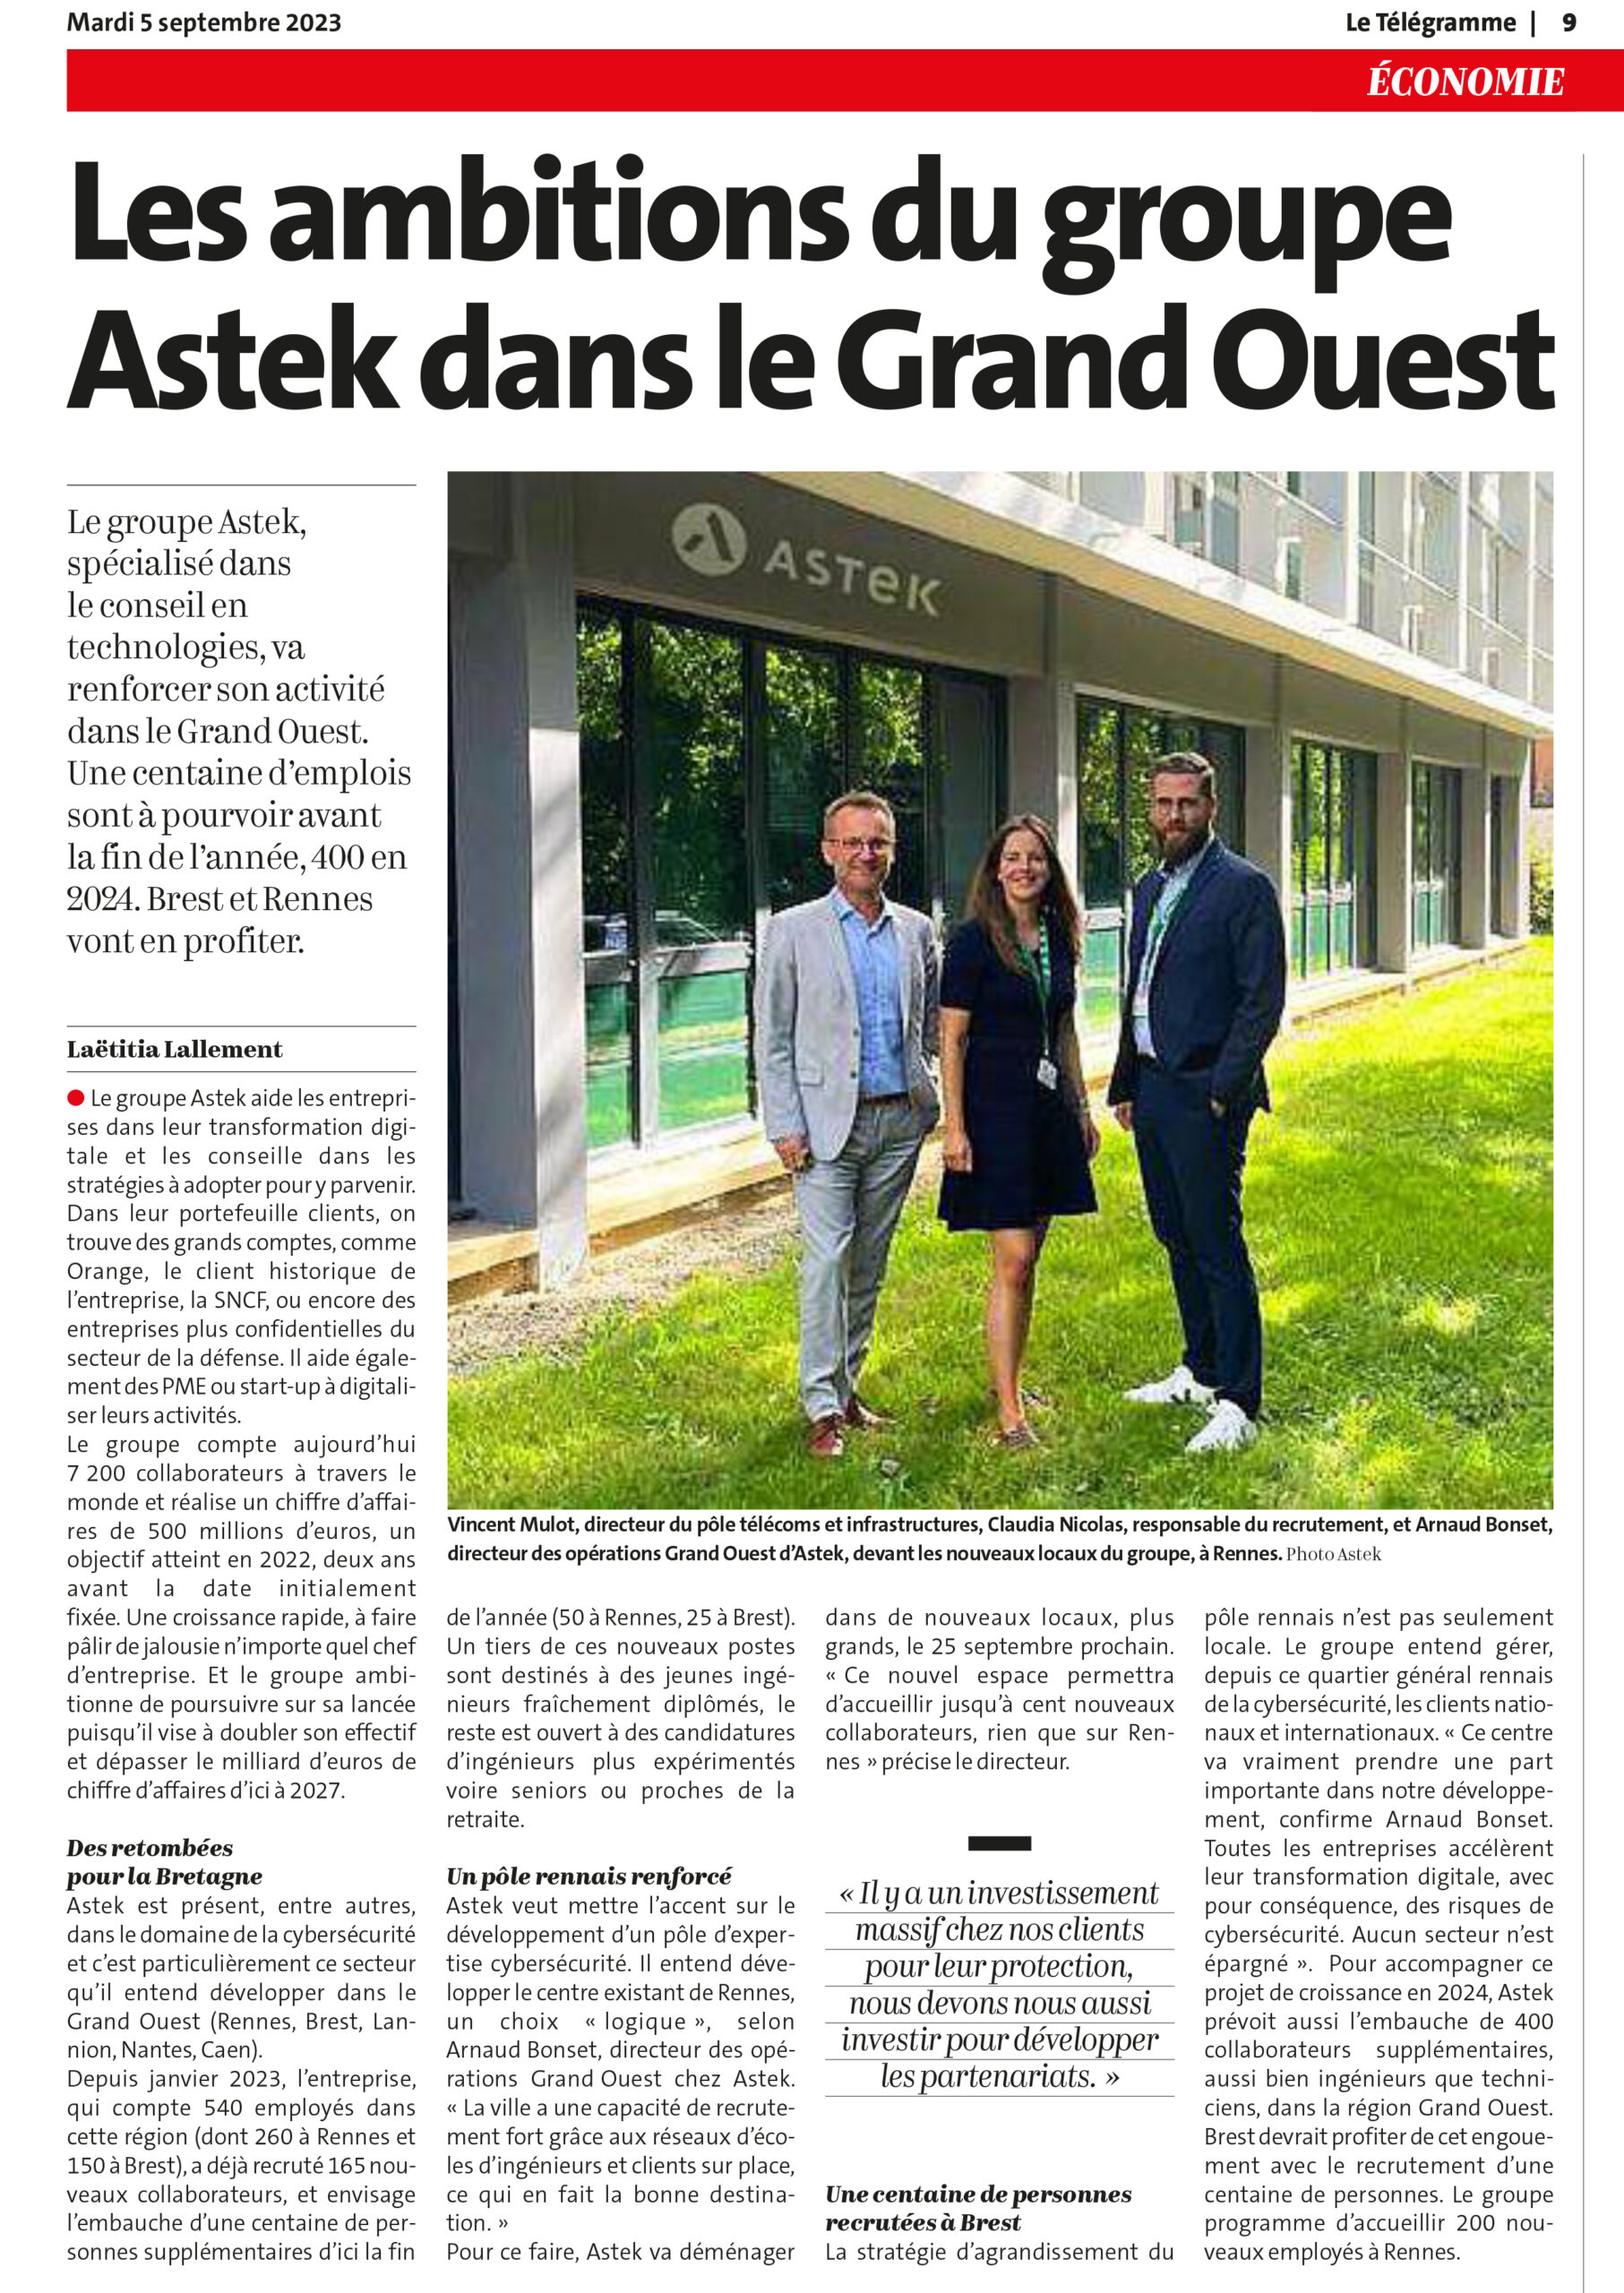 Article : Le Télégramme de Brest - Les ambitions du Groupe Astek dans le Grand Ouest 2023-09-05